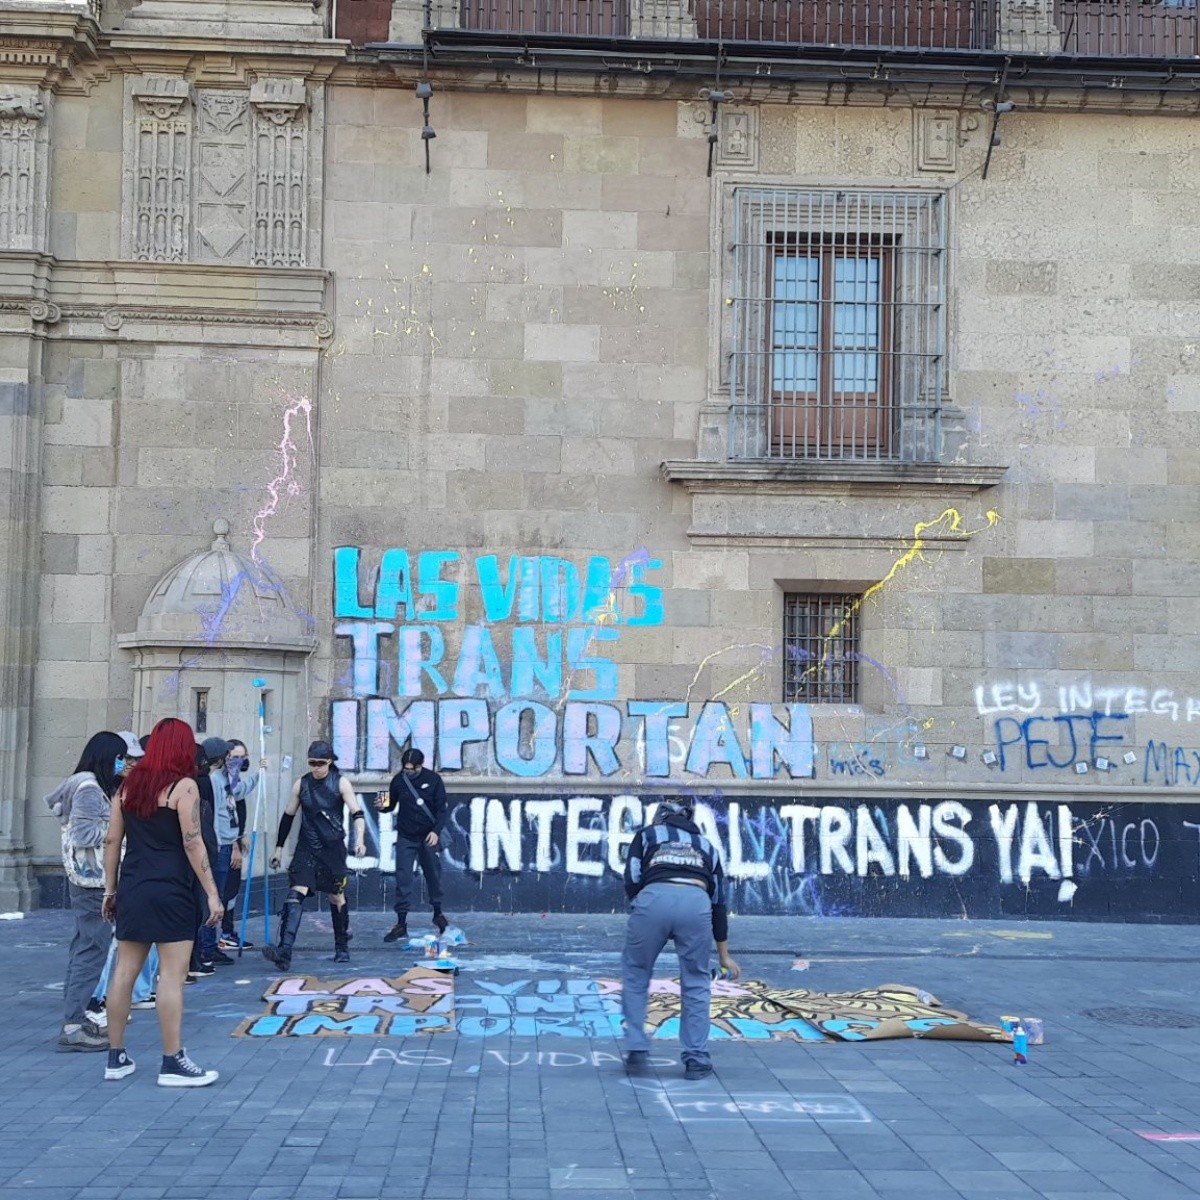 activistas trans protestan en palacio nacional tras comentario transfóbico de amlo